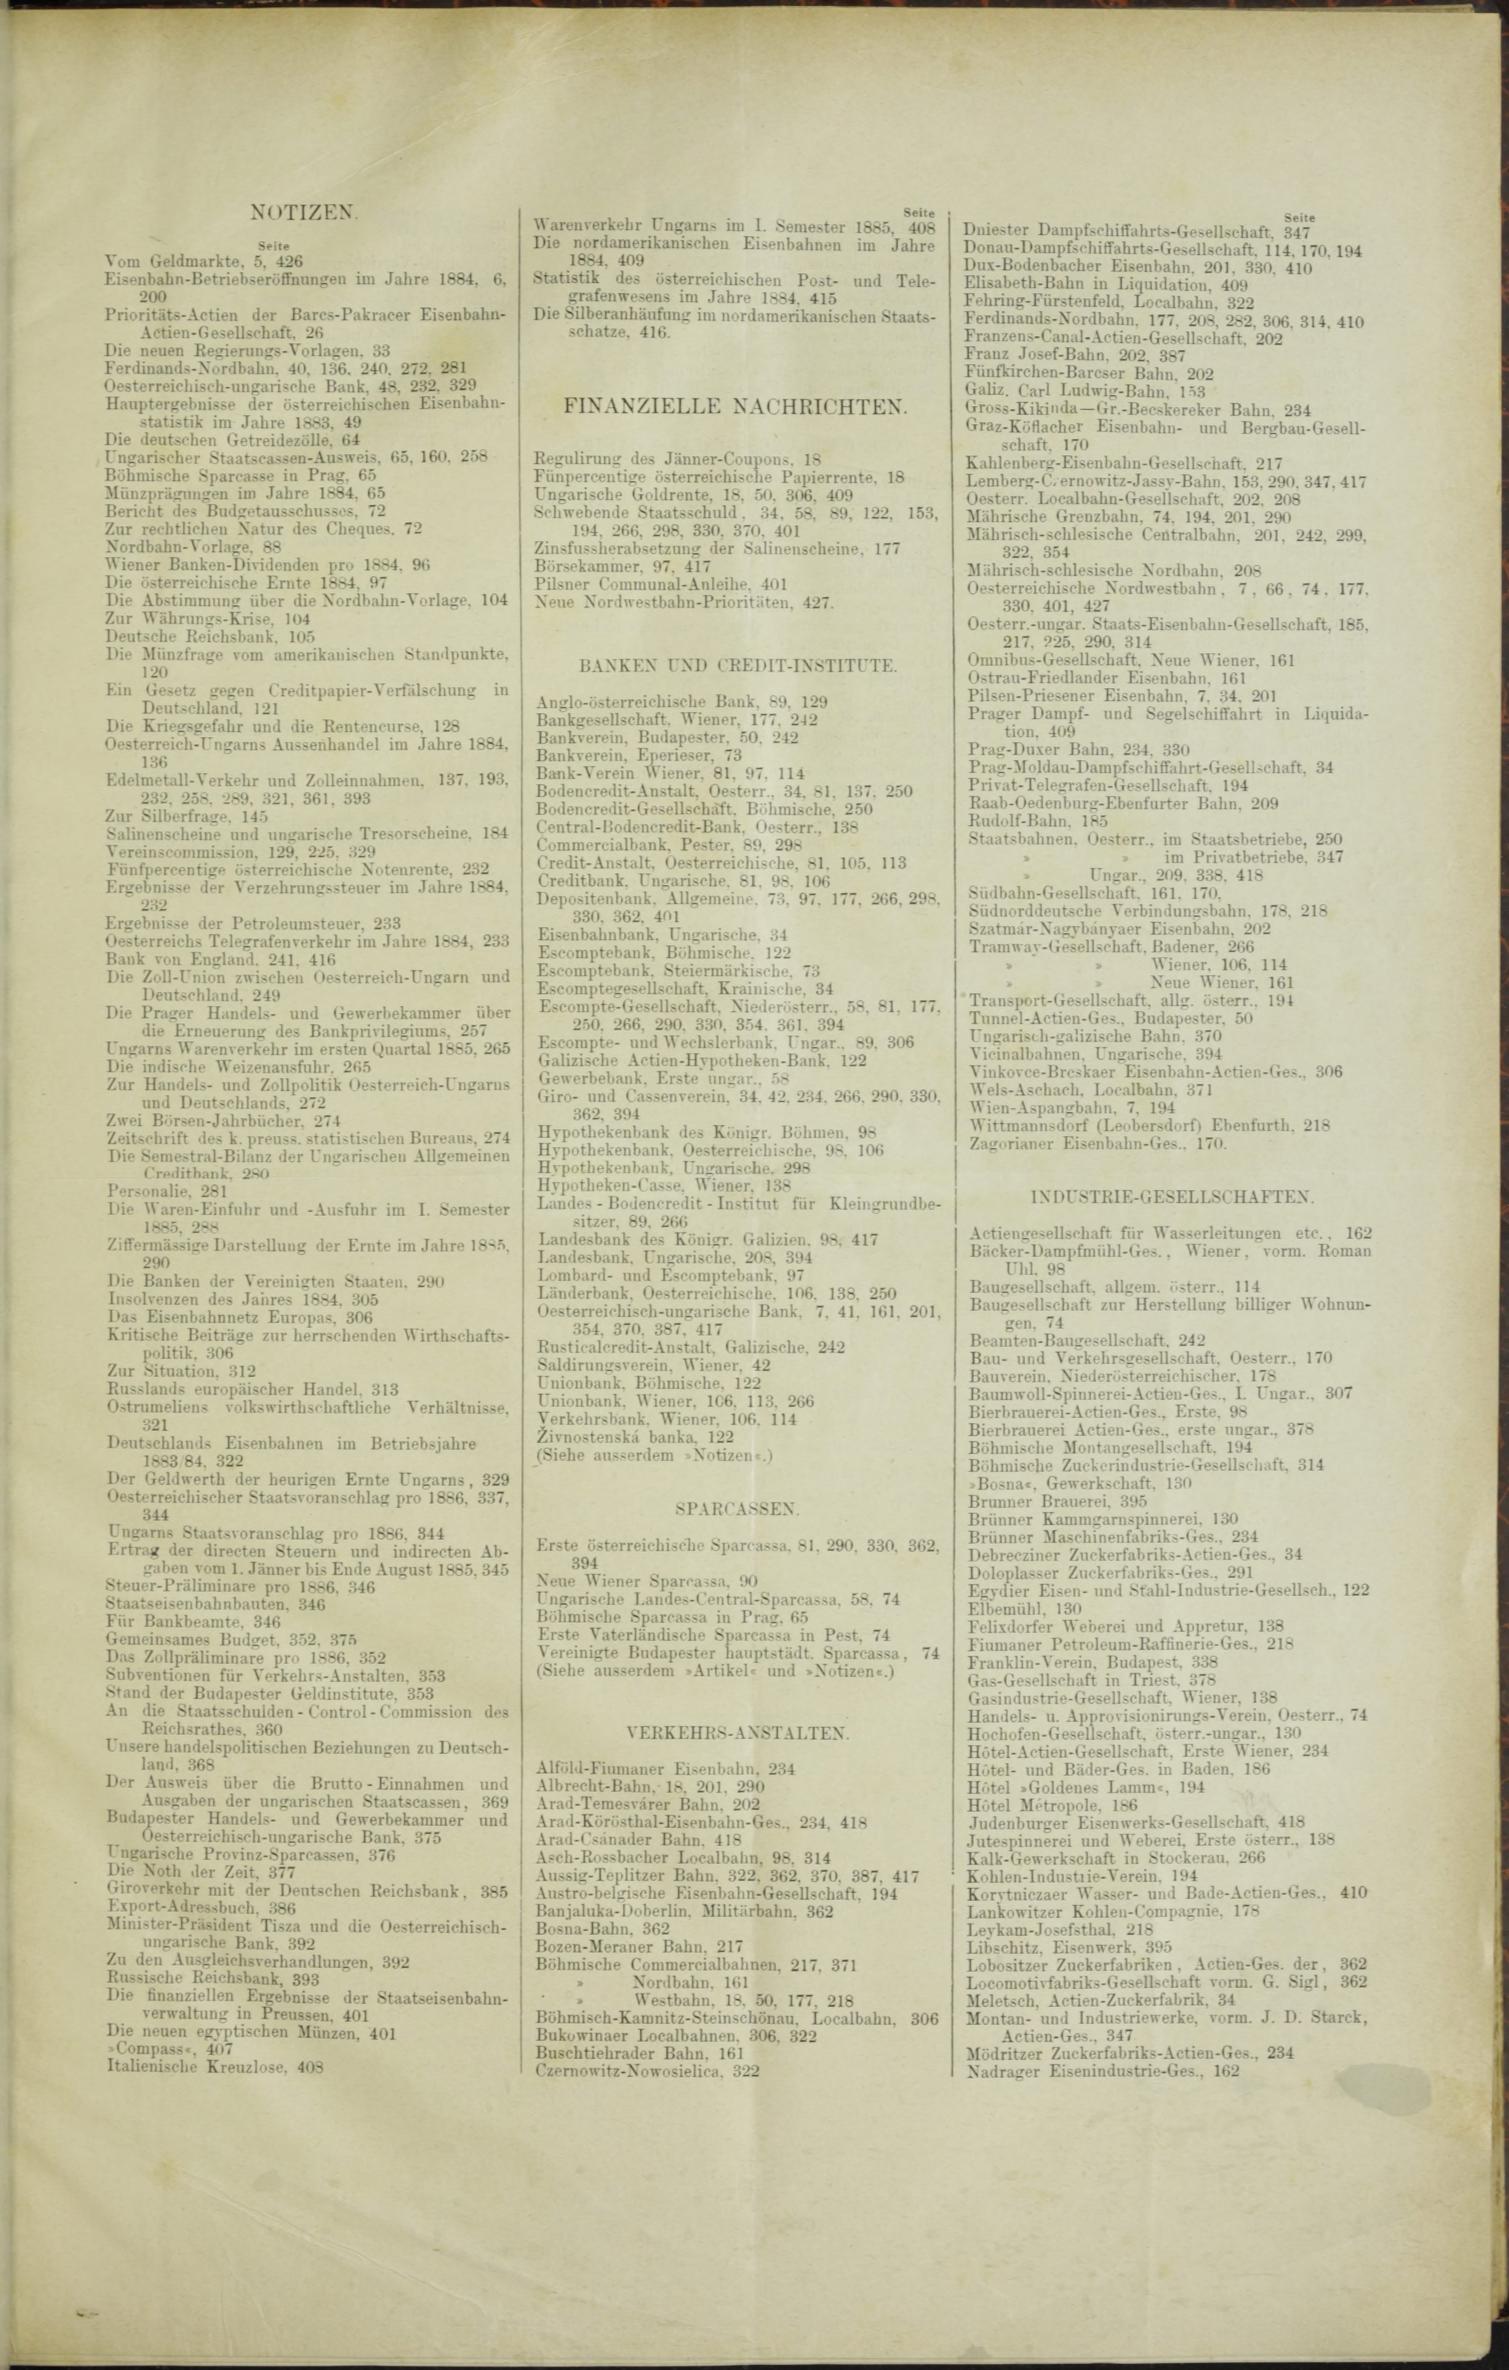 Der Tresor 29.01.1885 - Seite 11